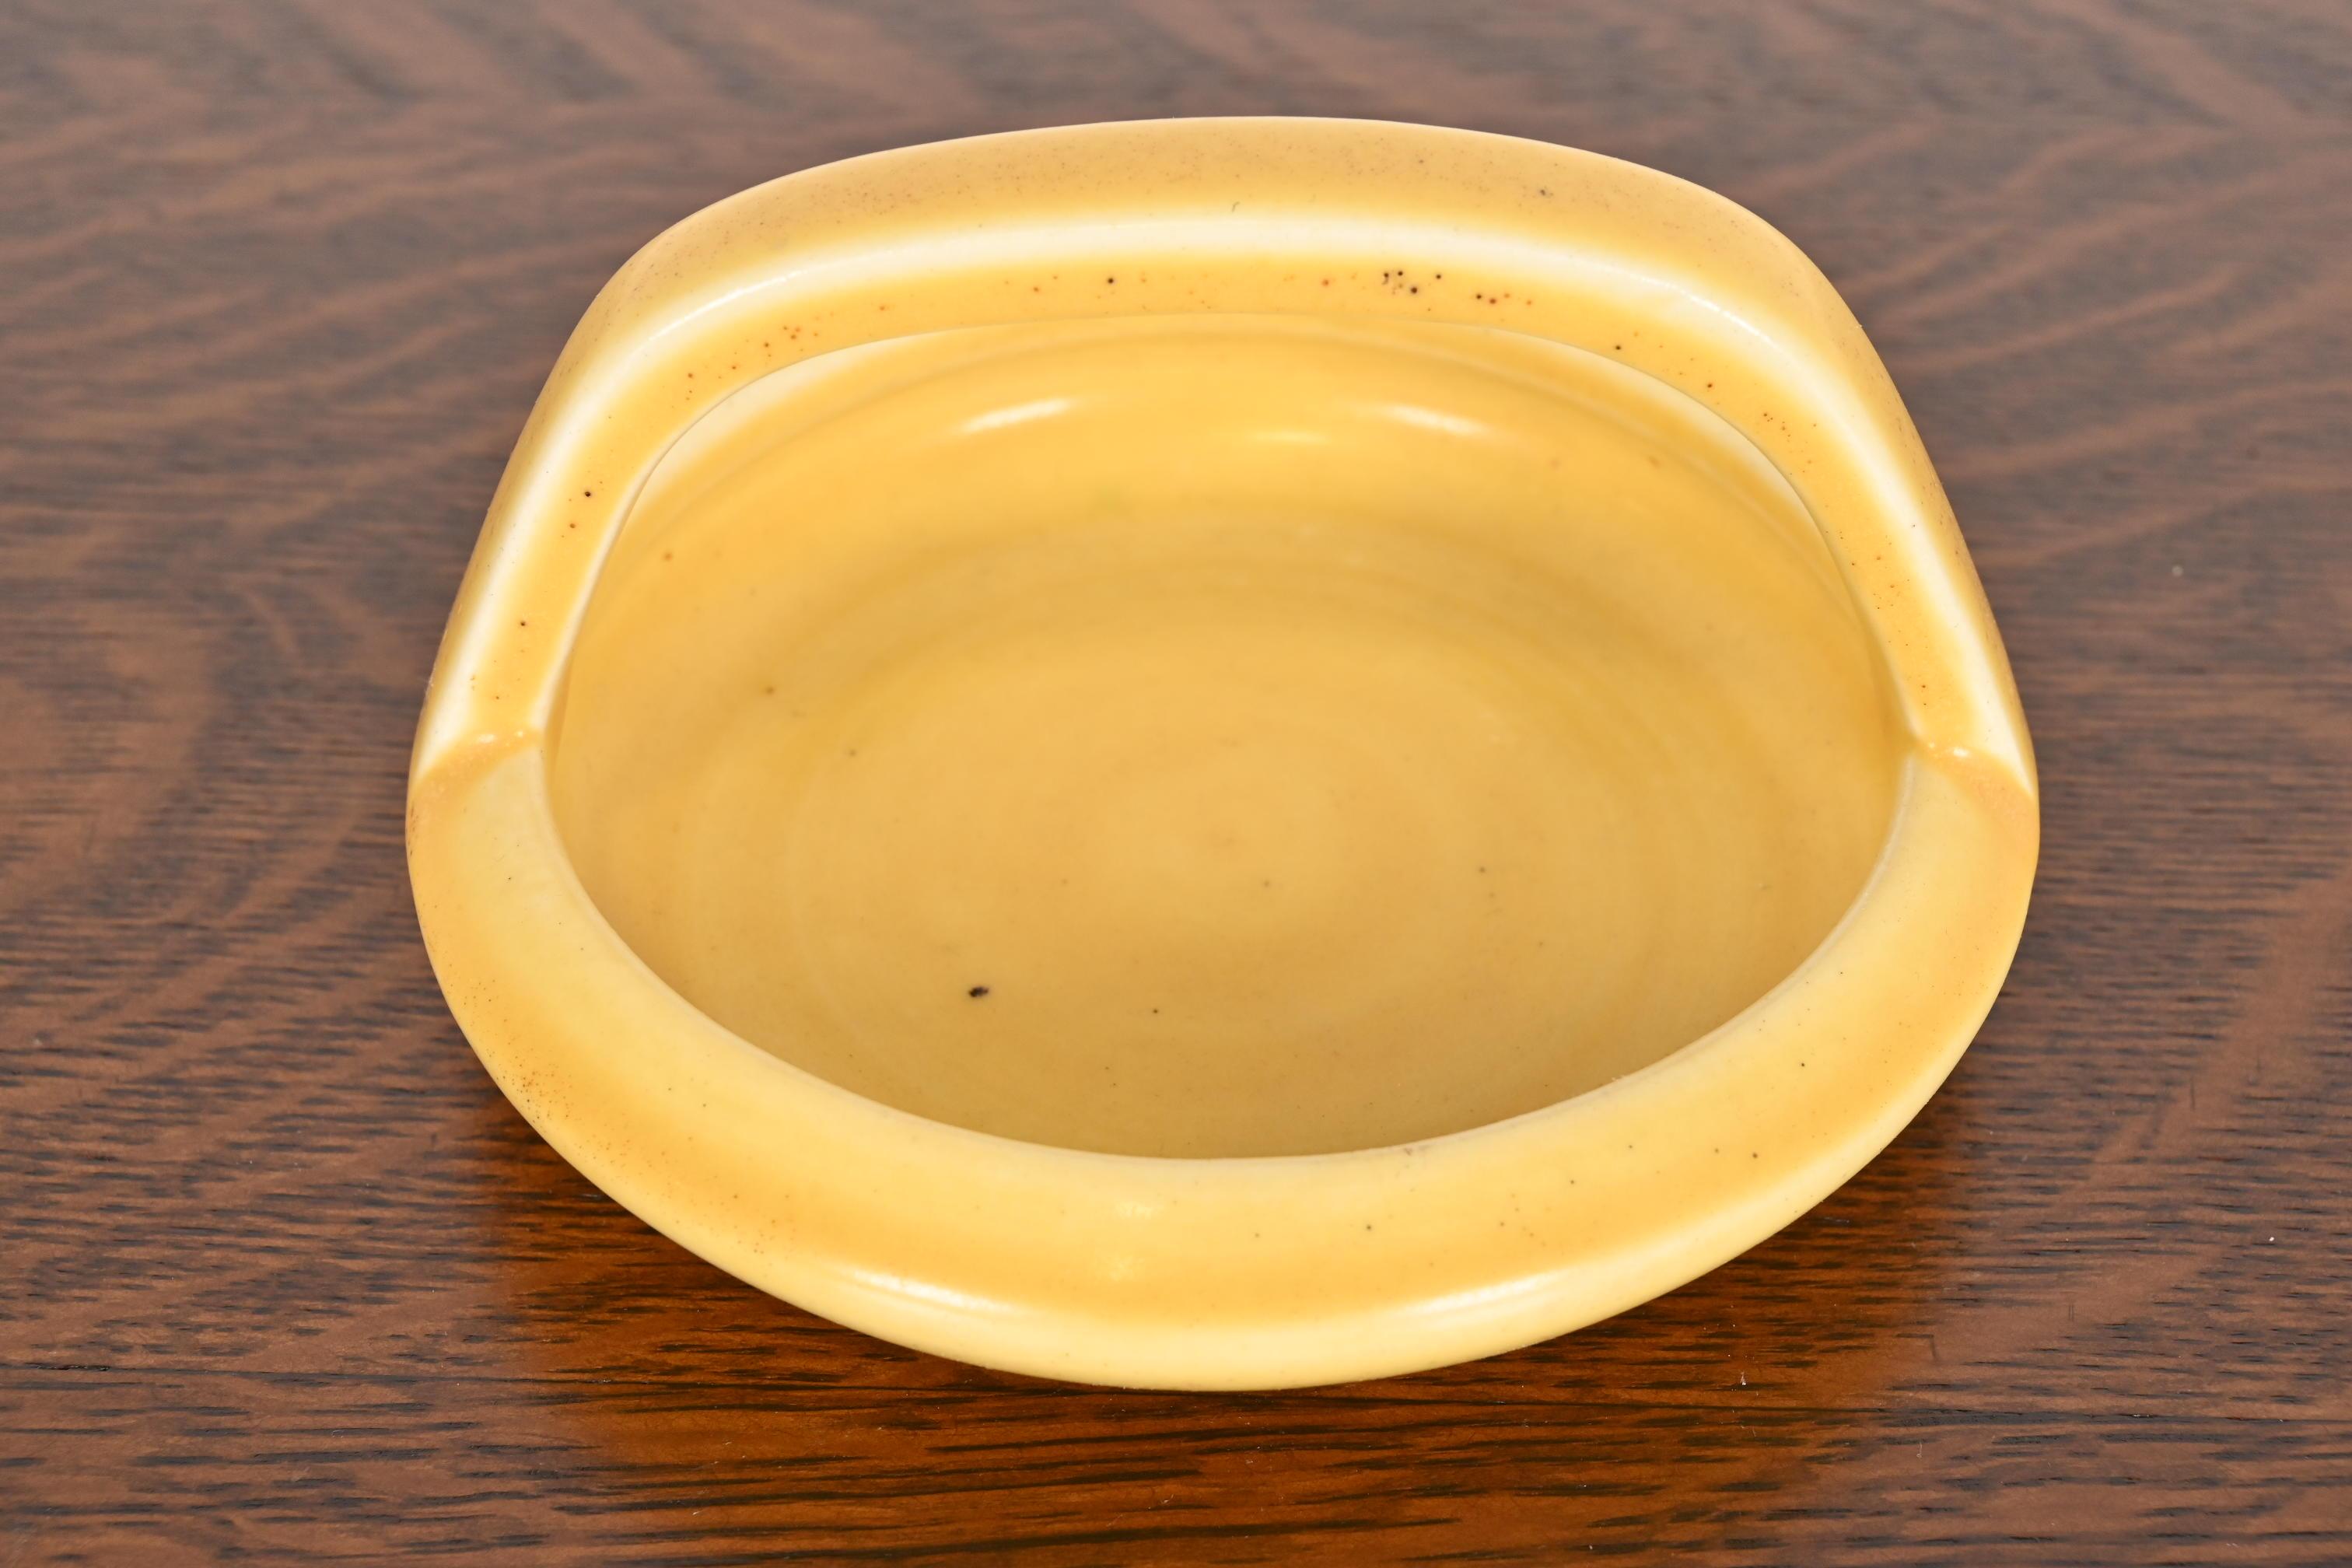 Magnifique bol, fourre-tout ou cendrier en céramique émaillée de la période Arts & Crafts.

Par Rookwood Pottery

ÉTATS-UNIS, 1922

Céramique émaillée, d'une belle couleur jaune.

Mesures : 5,63 